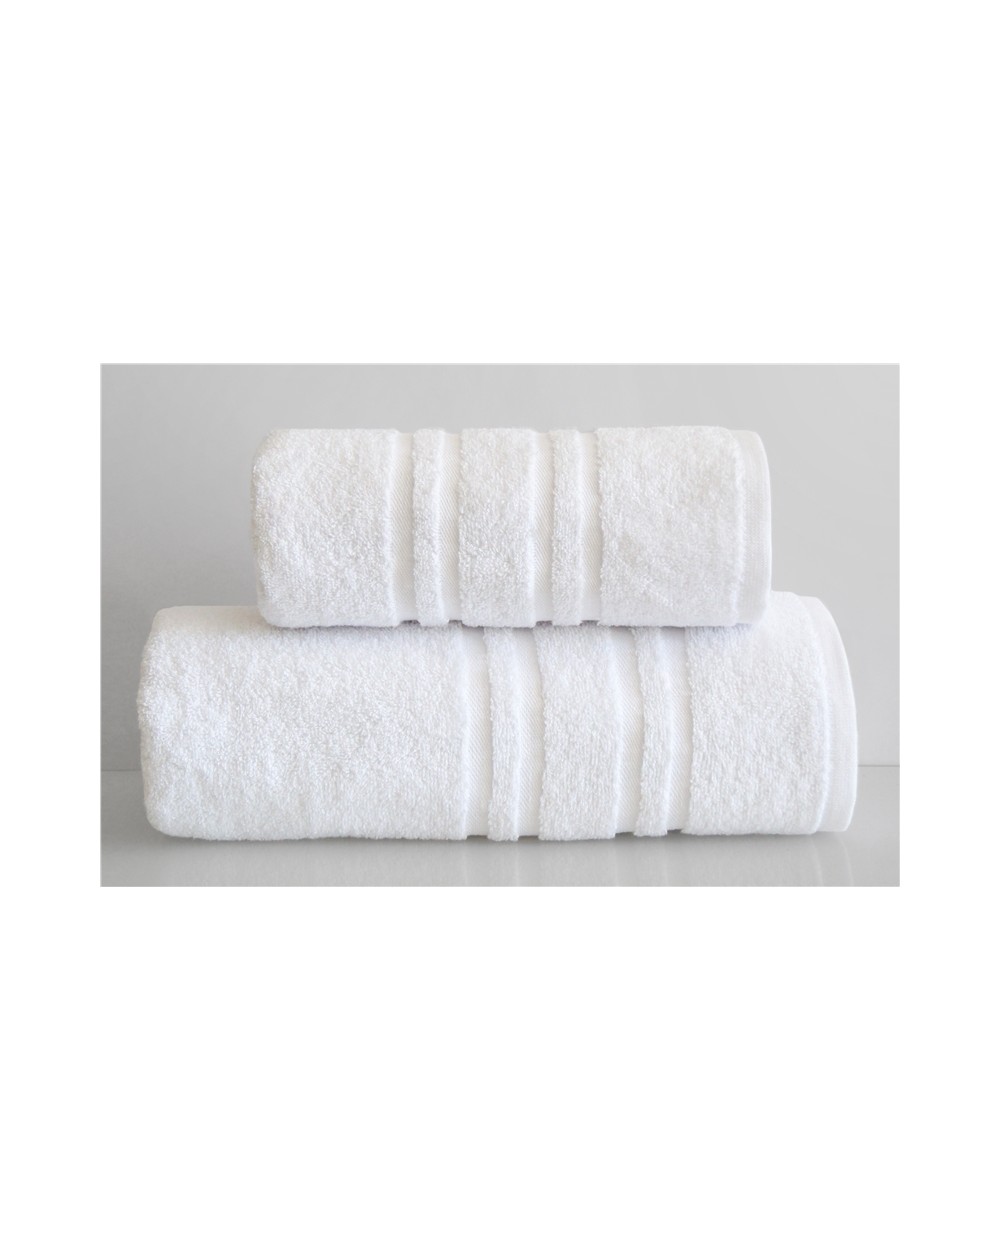 Ręcznik bawełna 70x130 Ivo biały Greno